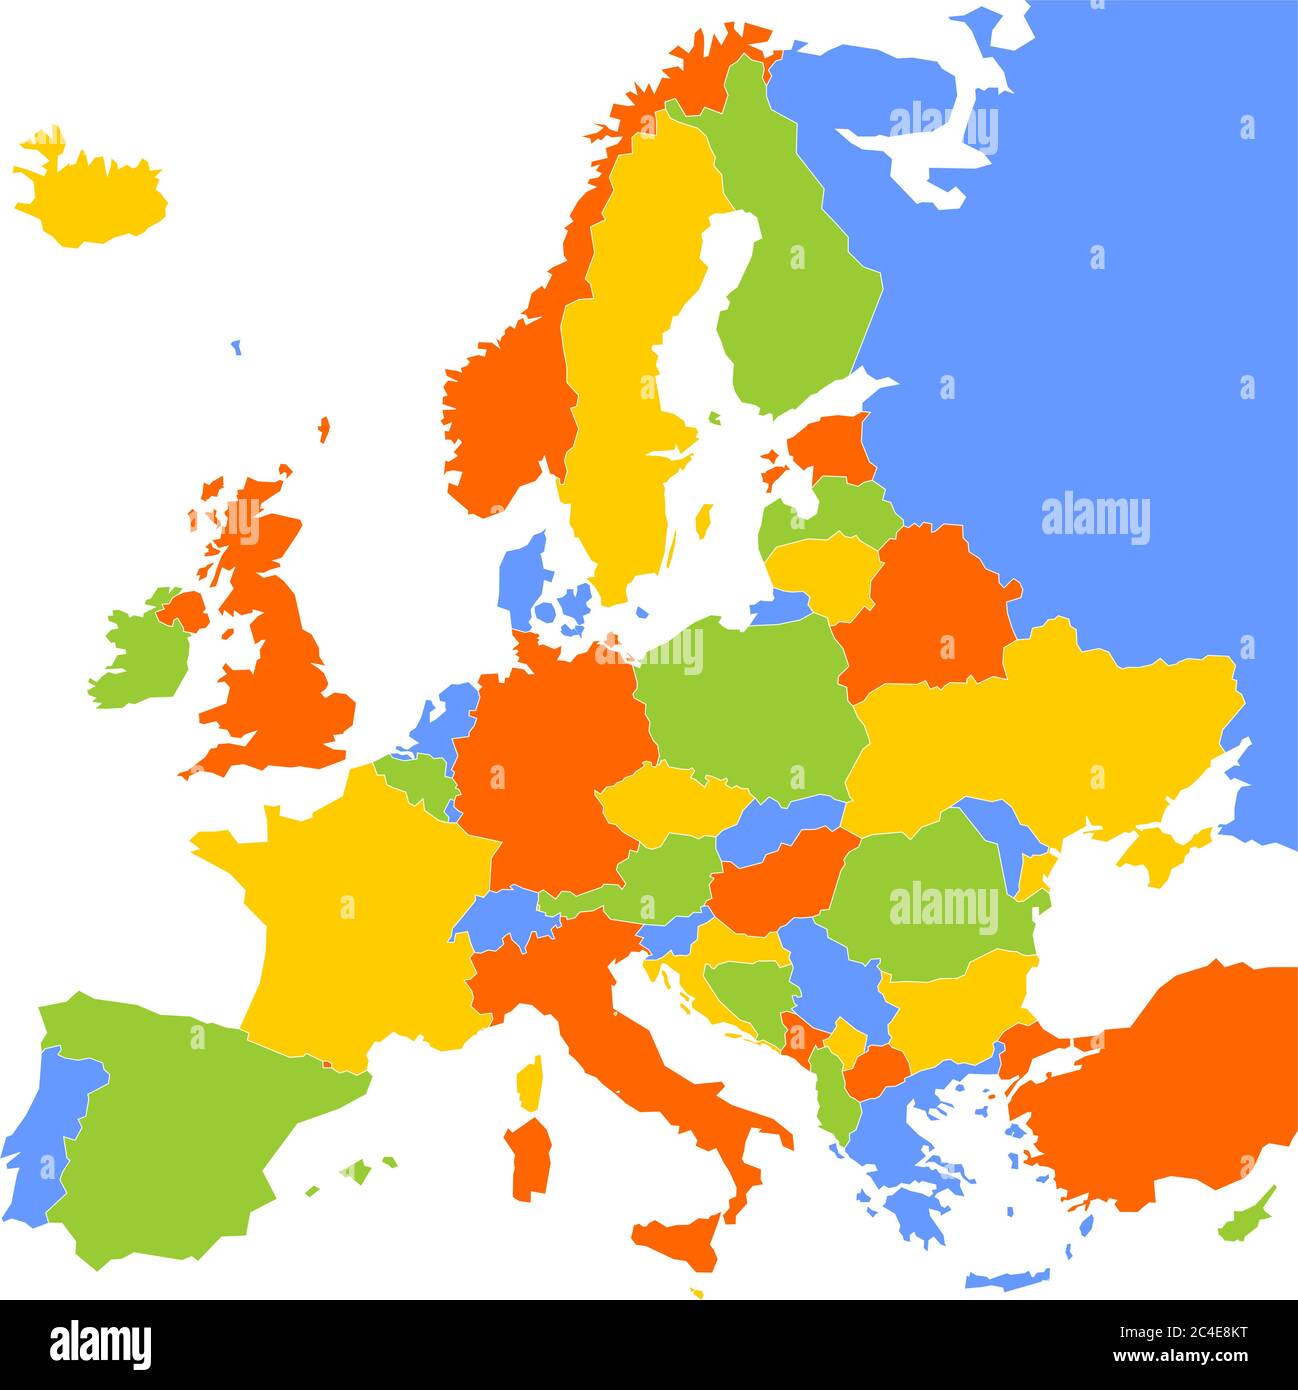 Mappa dell'Europa con paesi sovrani, ministeri e Kosovo inclusi. Mappa vettoriale semplificata con tema a quattro colori su sfondo bianco. Illustrazione Vettoriale